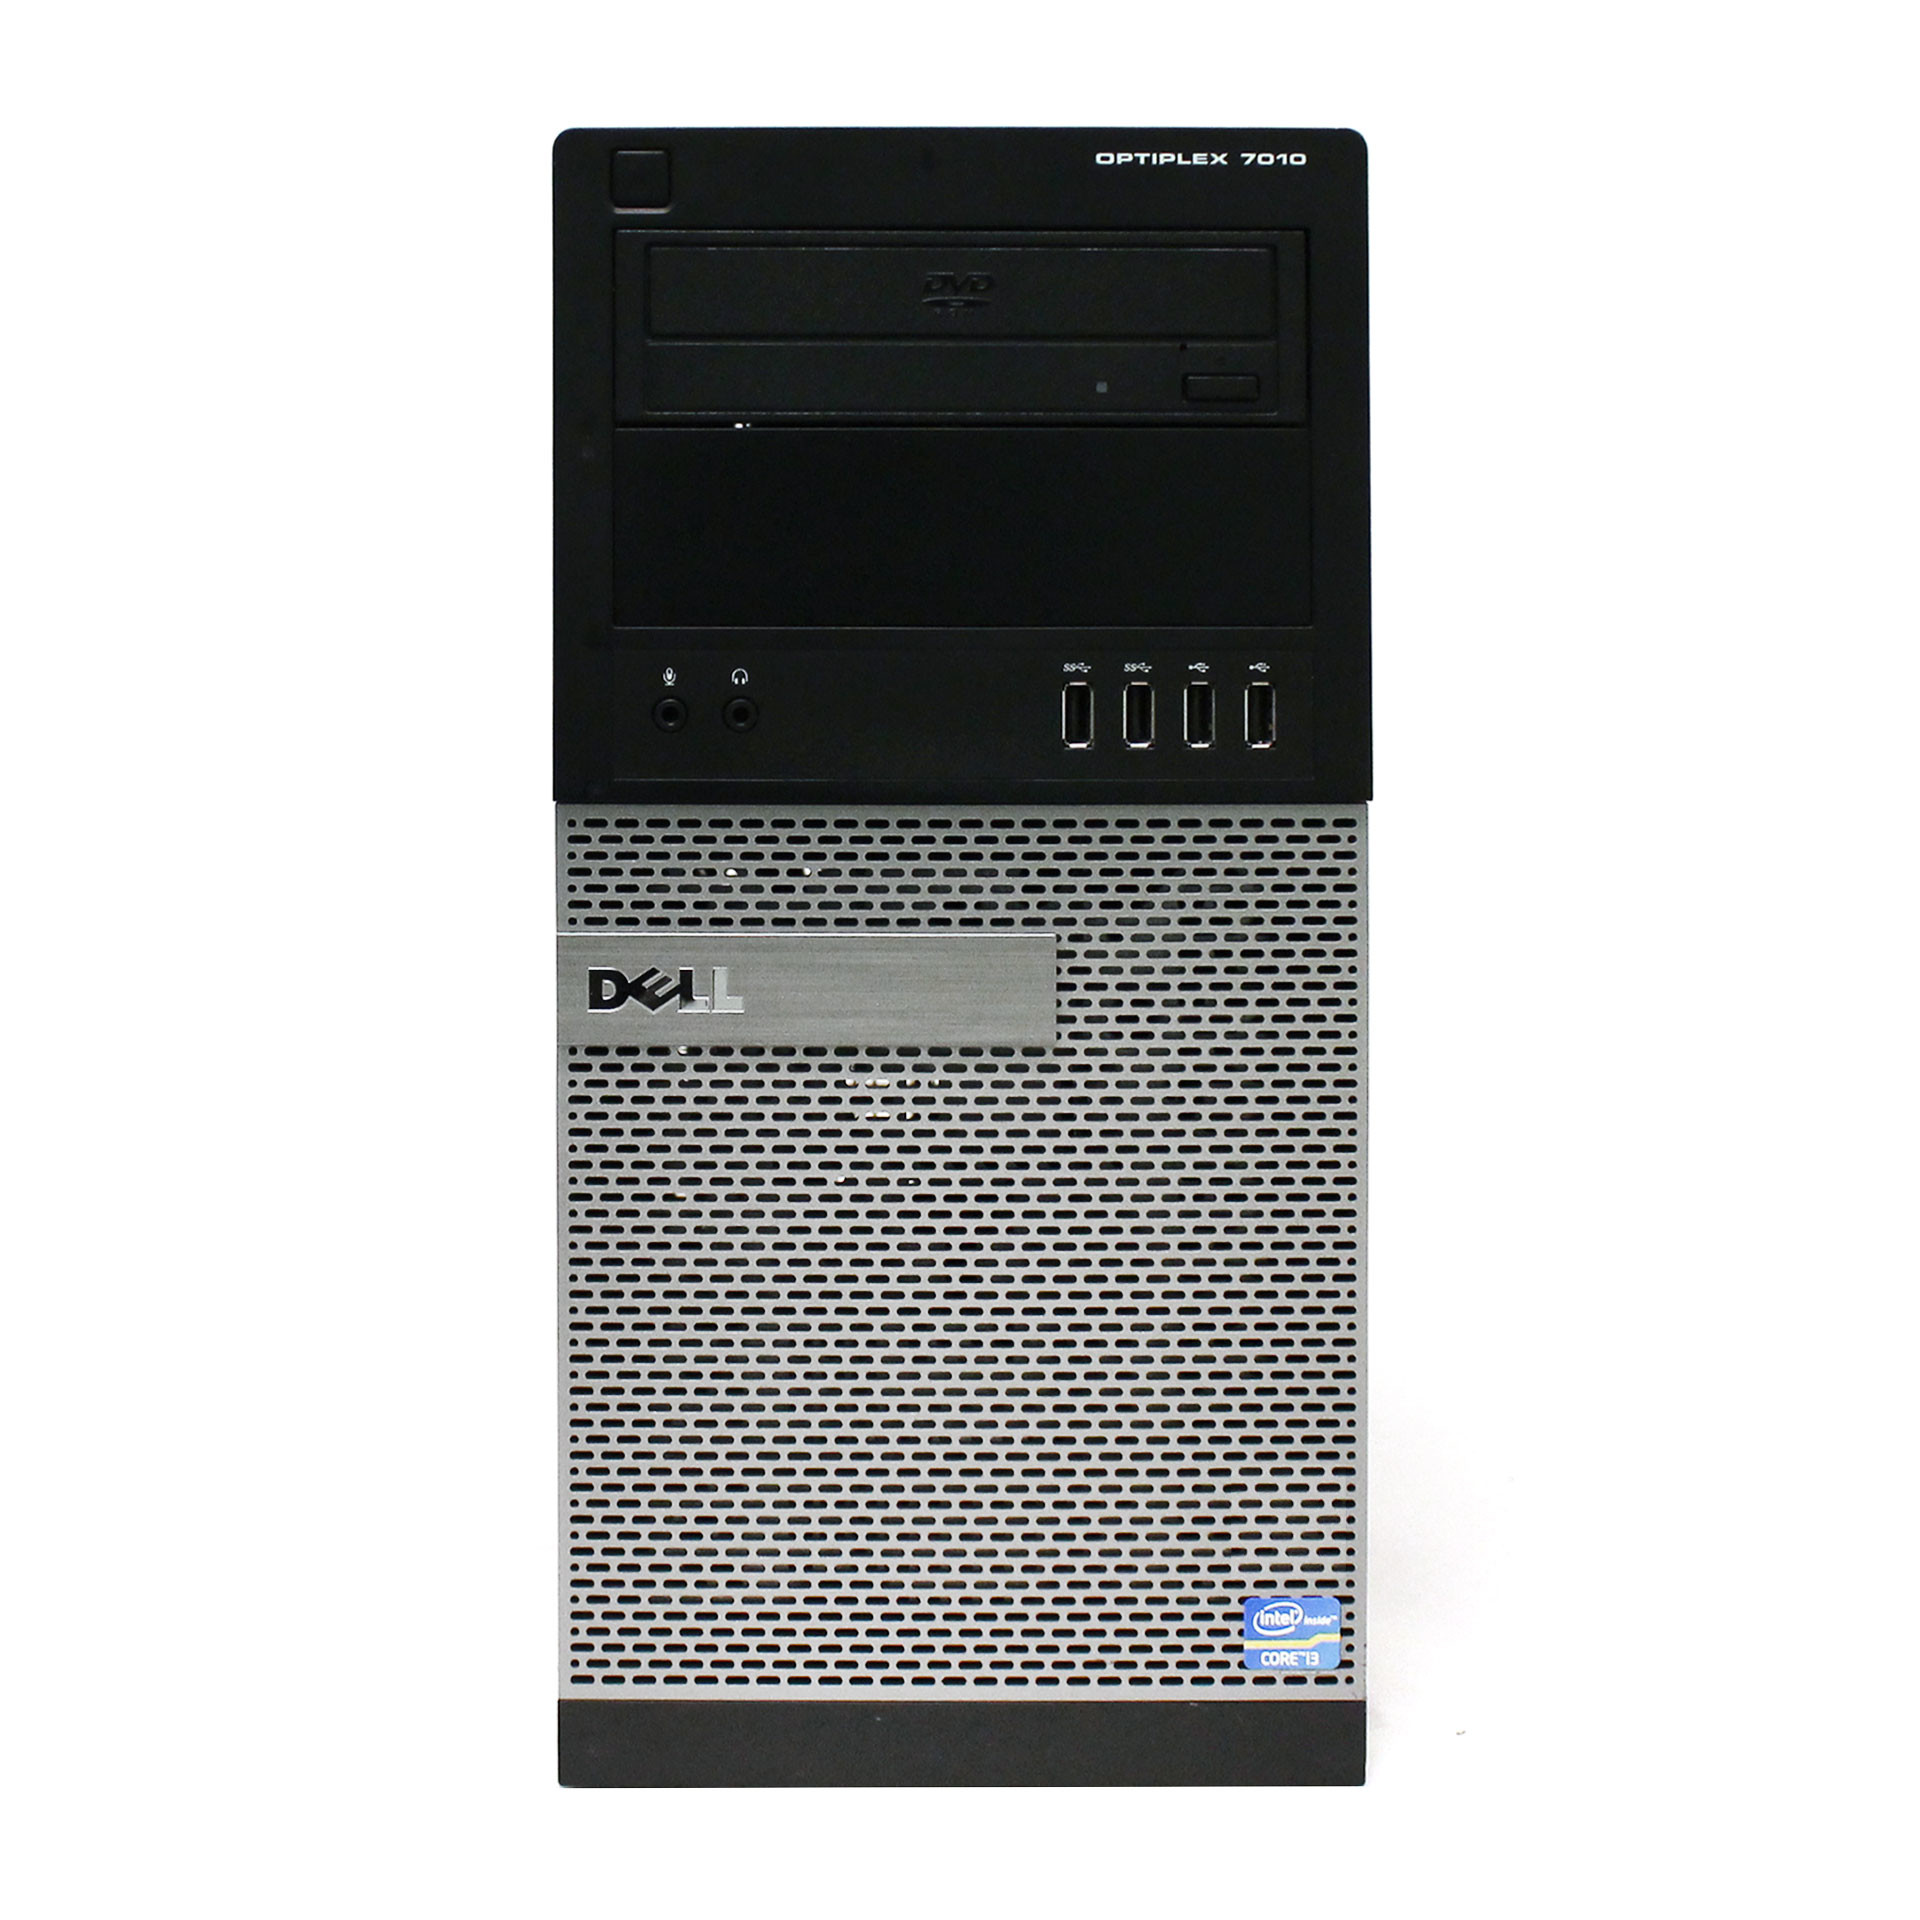 Dell OptiPlex 7010 SMT Intel i3-3220 3.3GHz RAM 8GB HDD 250GB D09M003